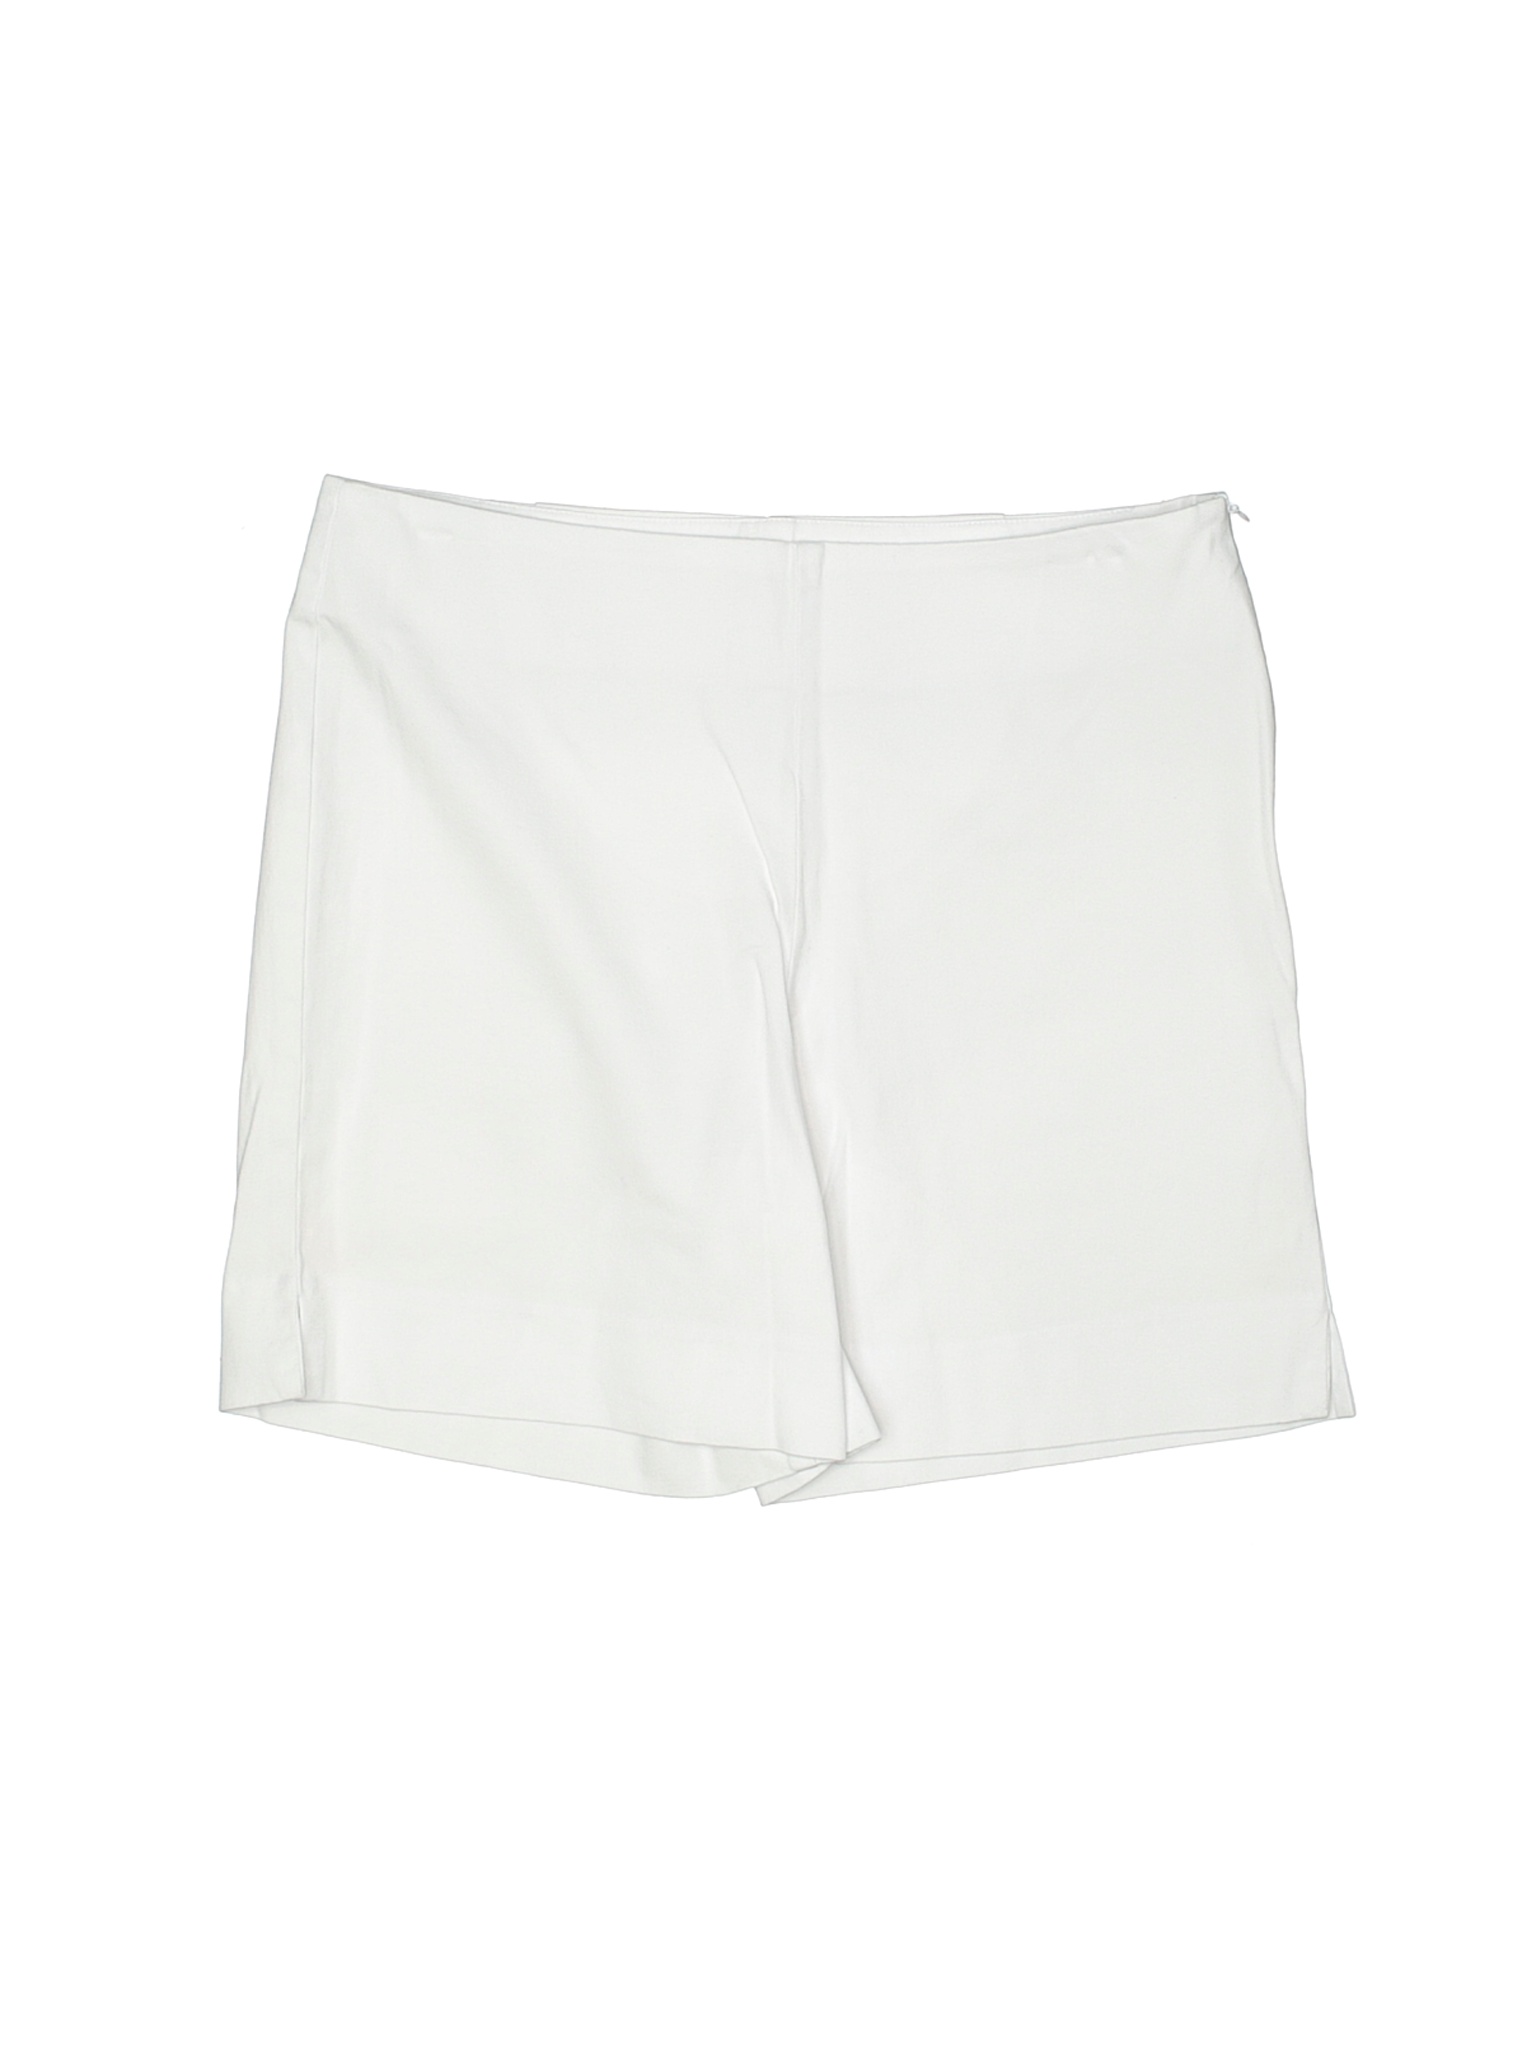 Boston Proper Women White Khaki Shorts 6 | eBay